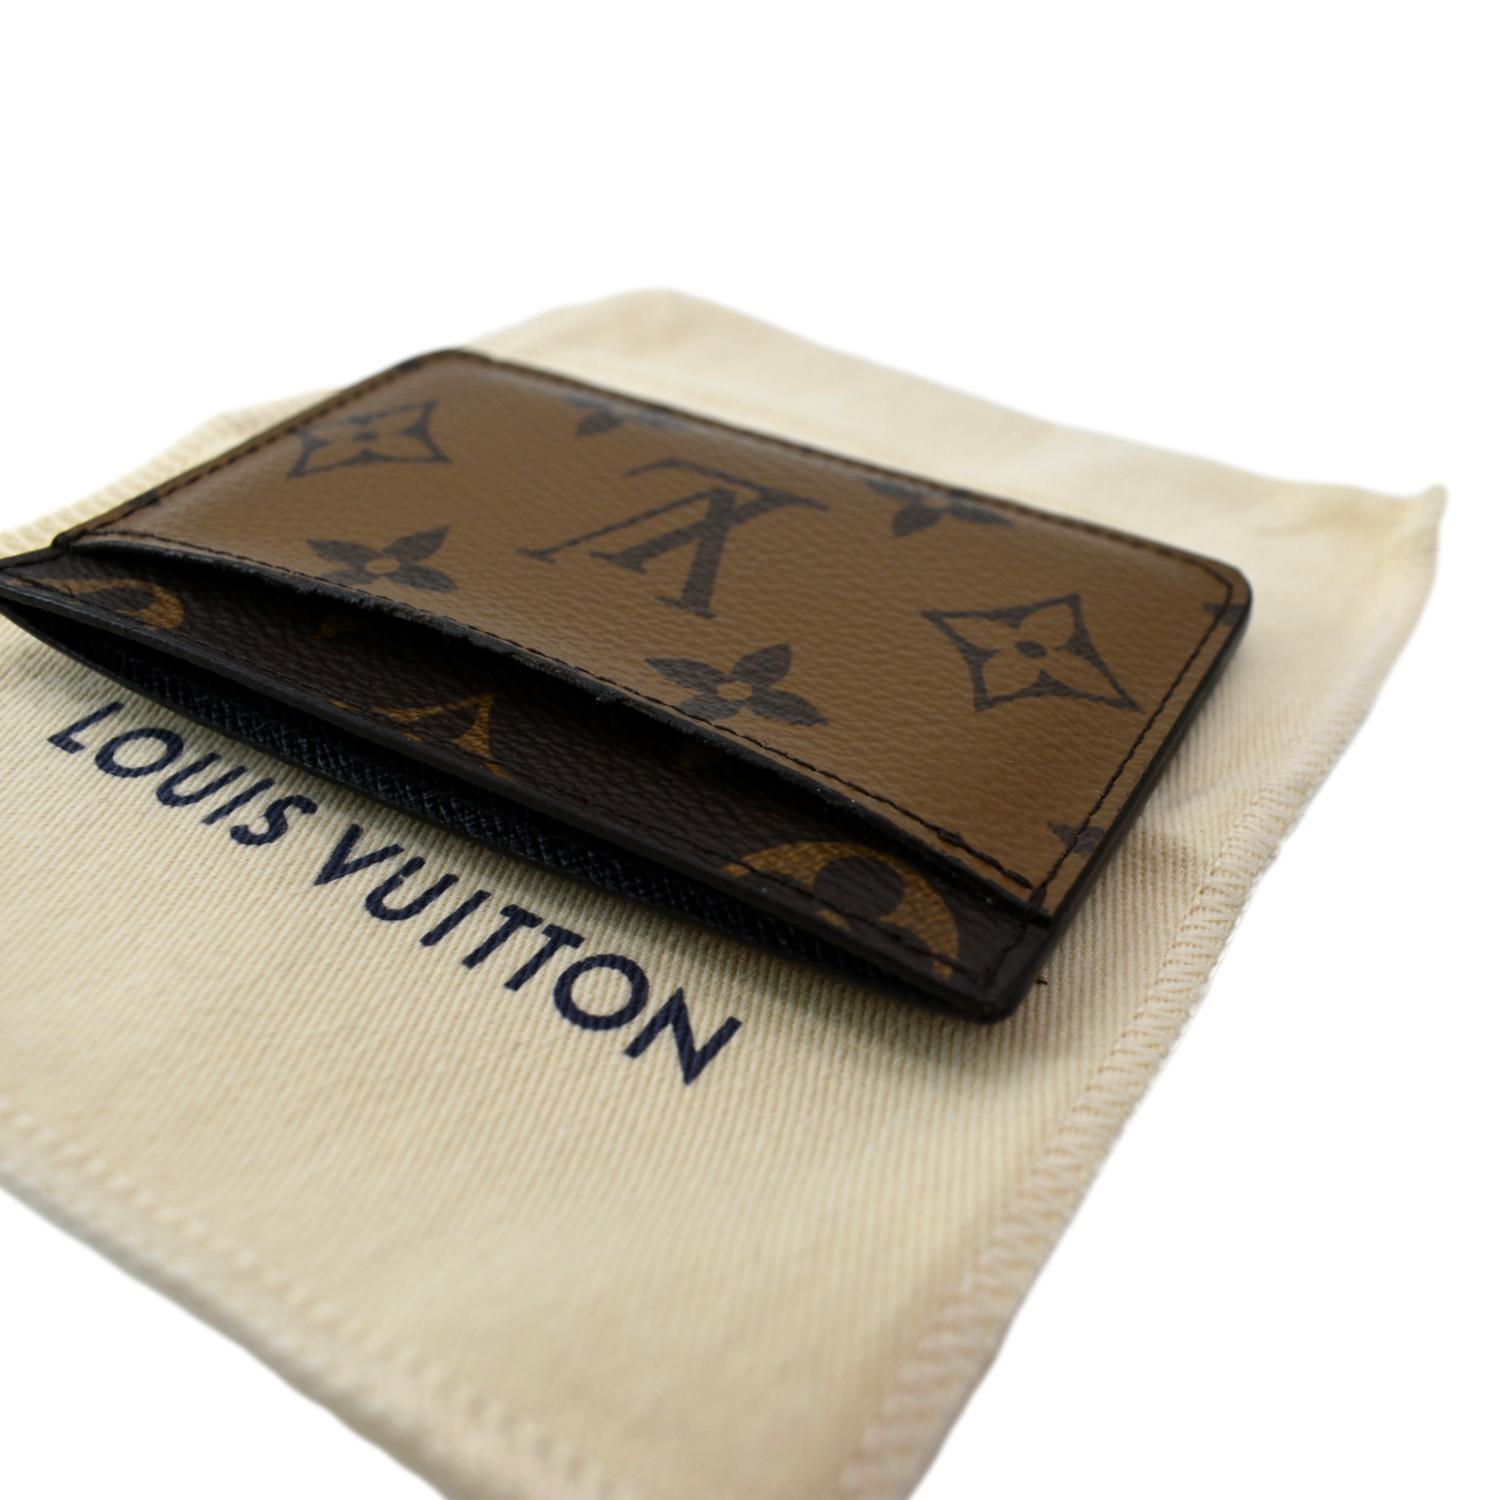 Louis Vuitton Money Clip - Brown Wallets, Accessories - LOU48994